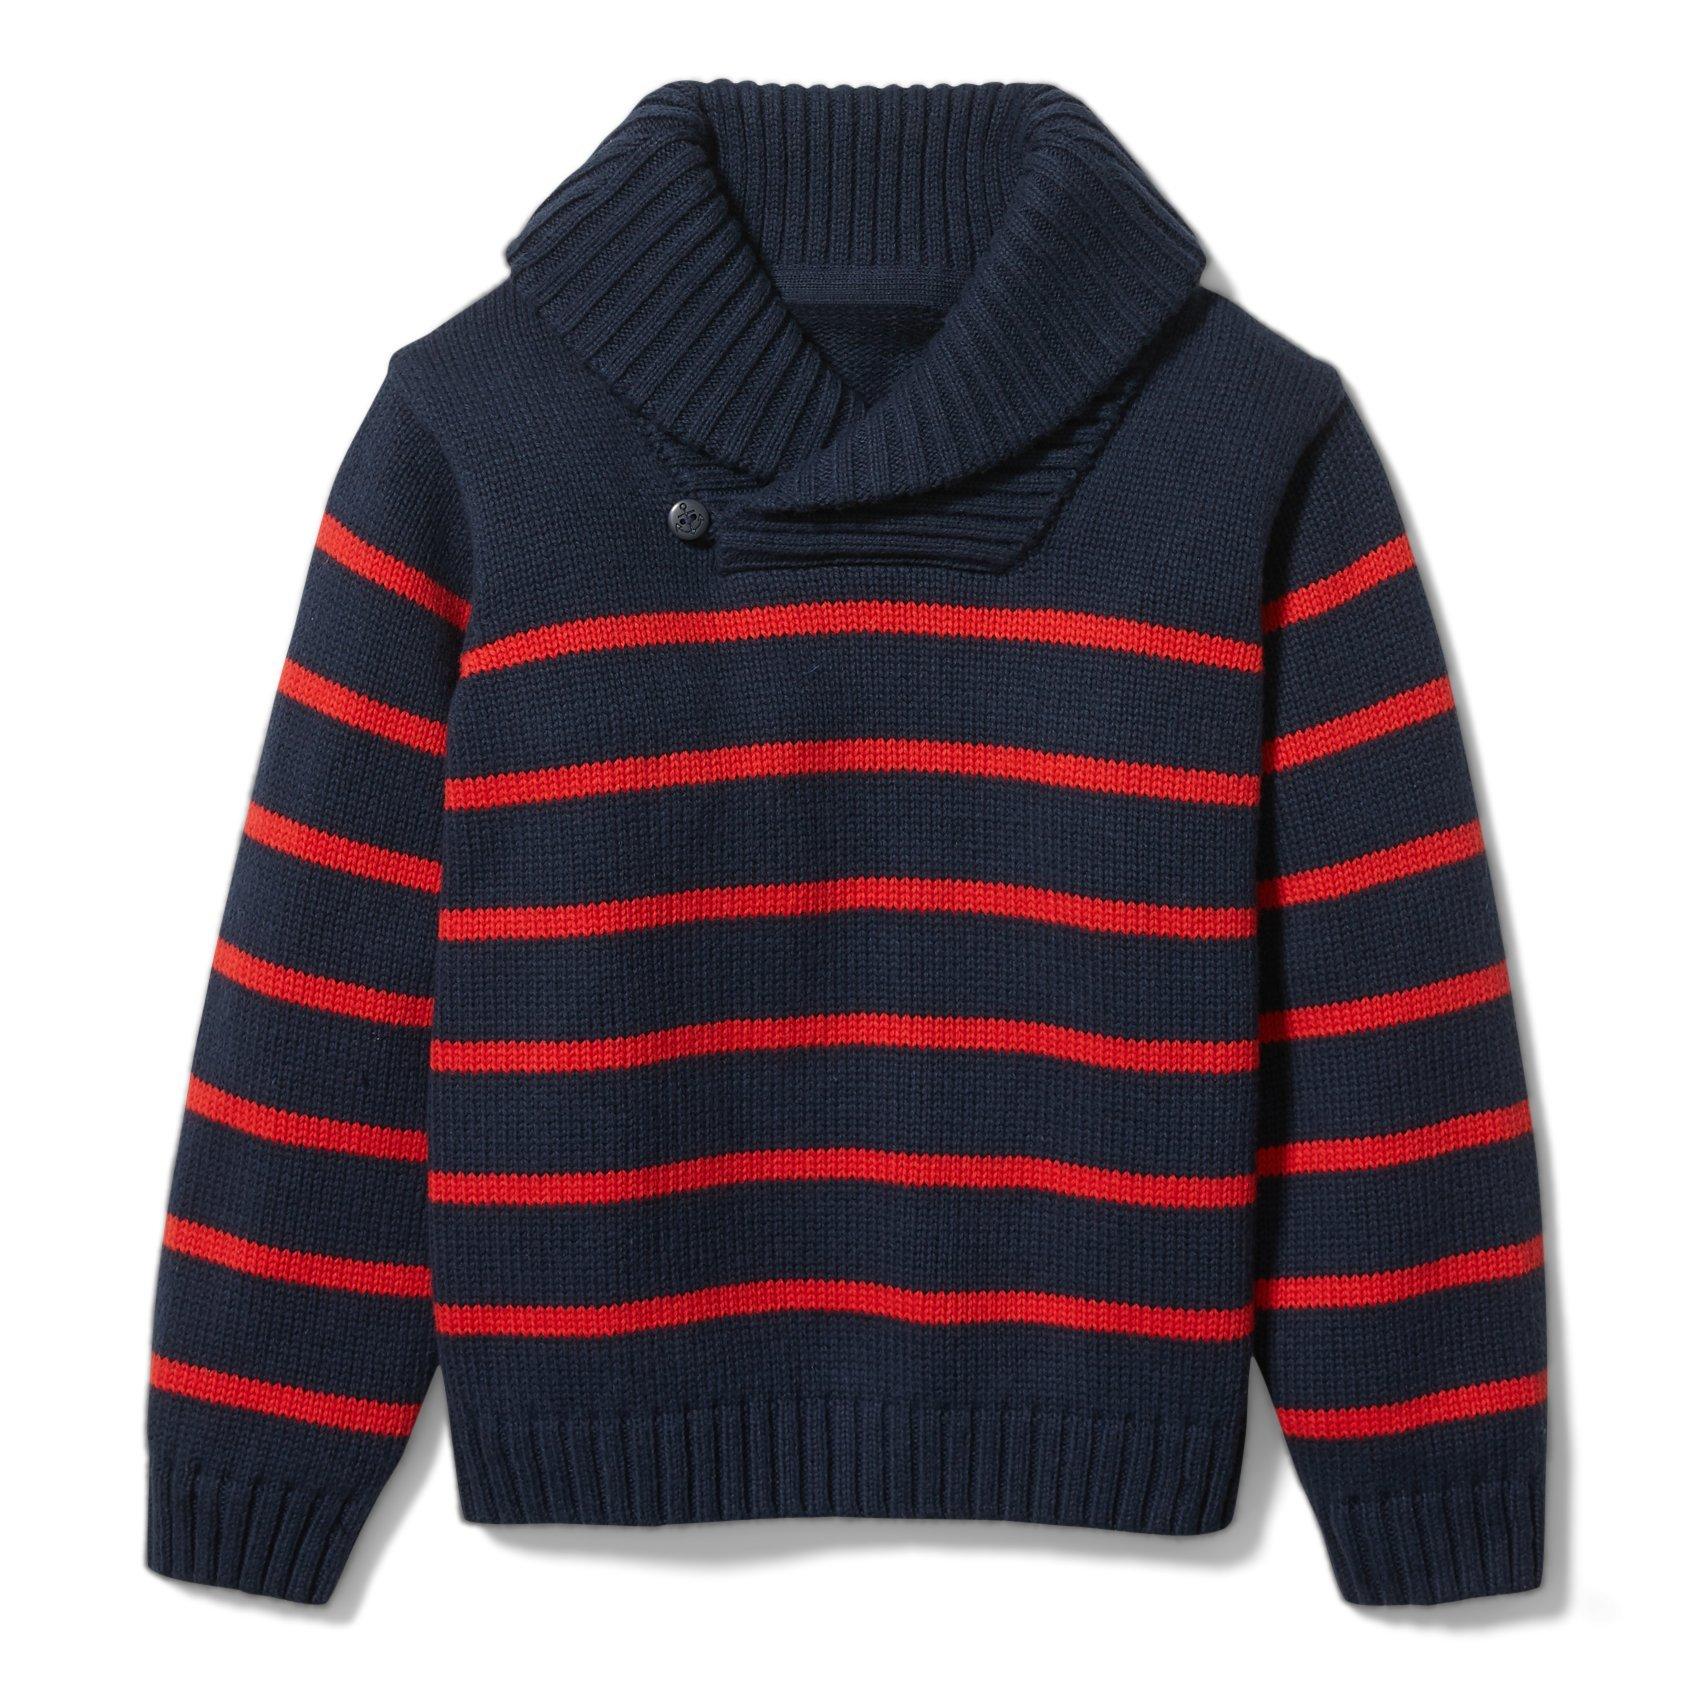 Striped Shawl Collar Sweater